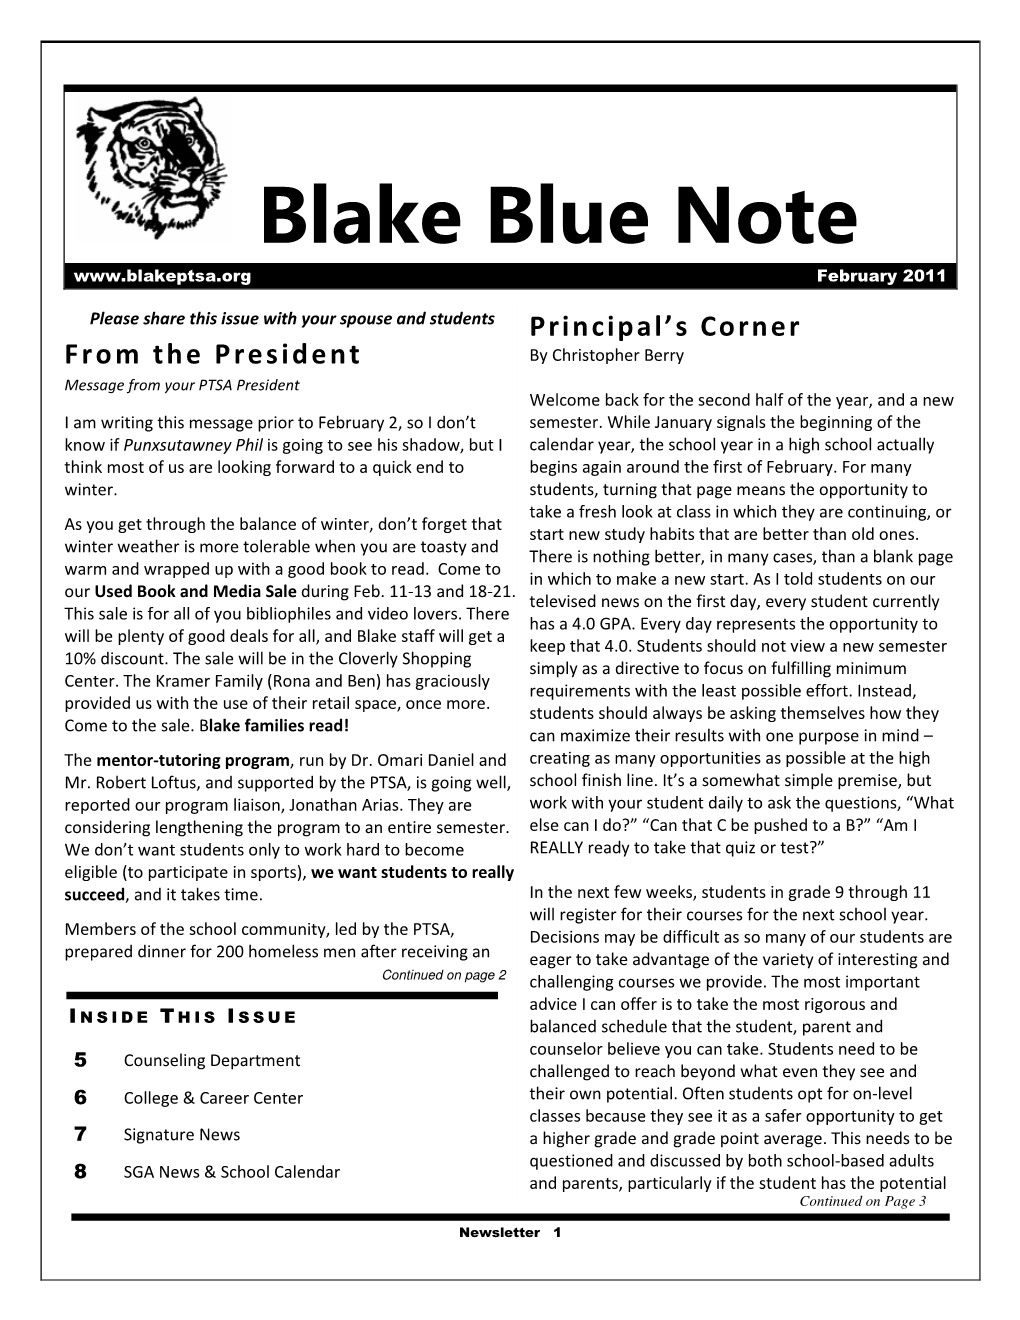 Blake Blue Note February 2011